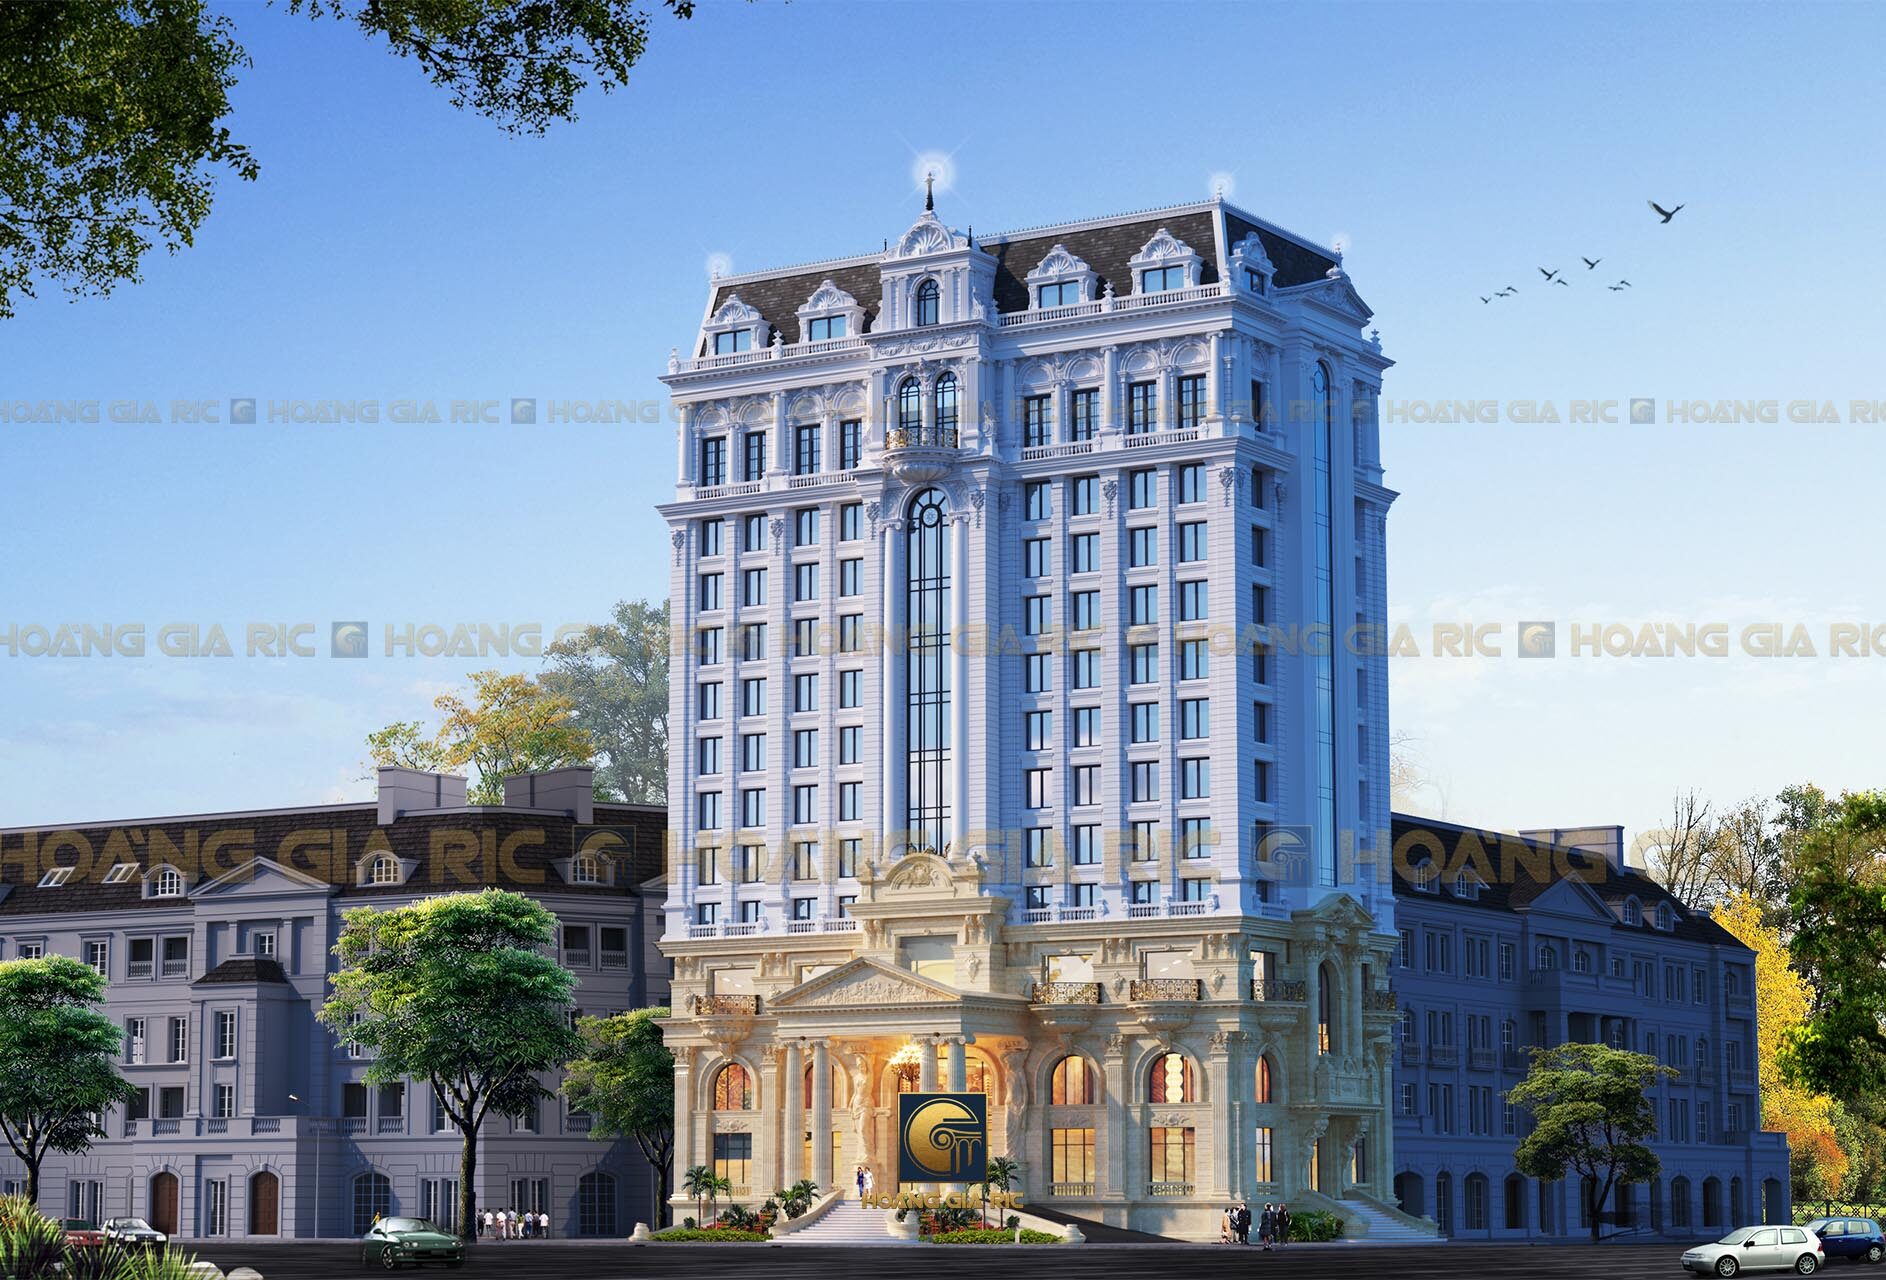 191130, thiết kế khách sạn 14 tầng tân cổ điển.